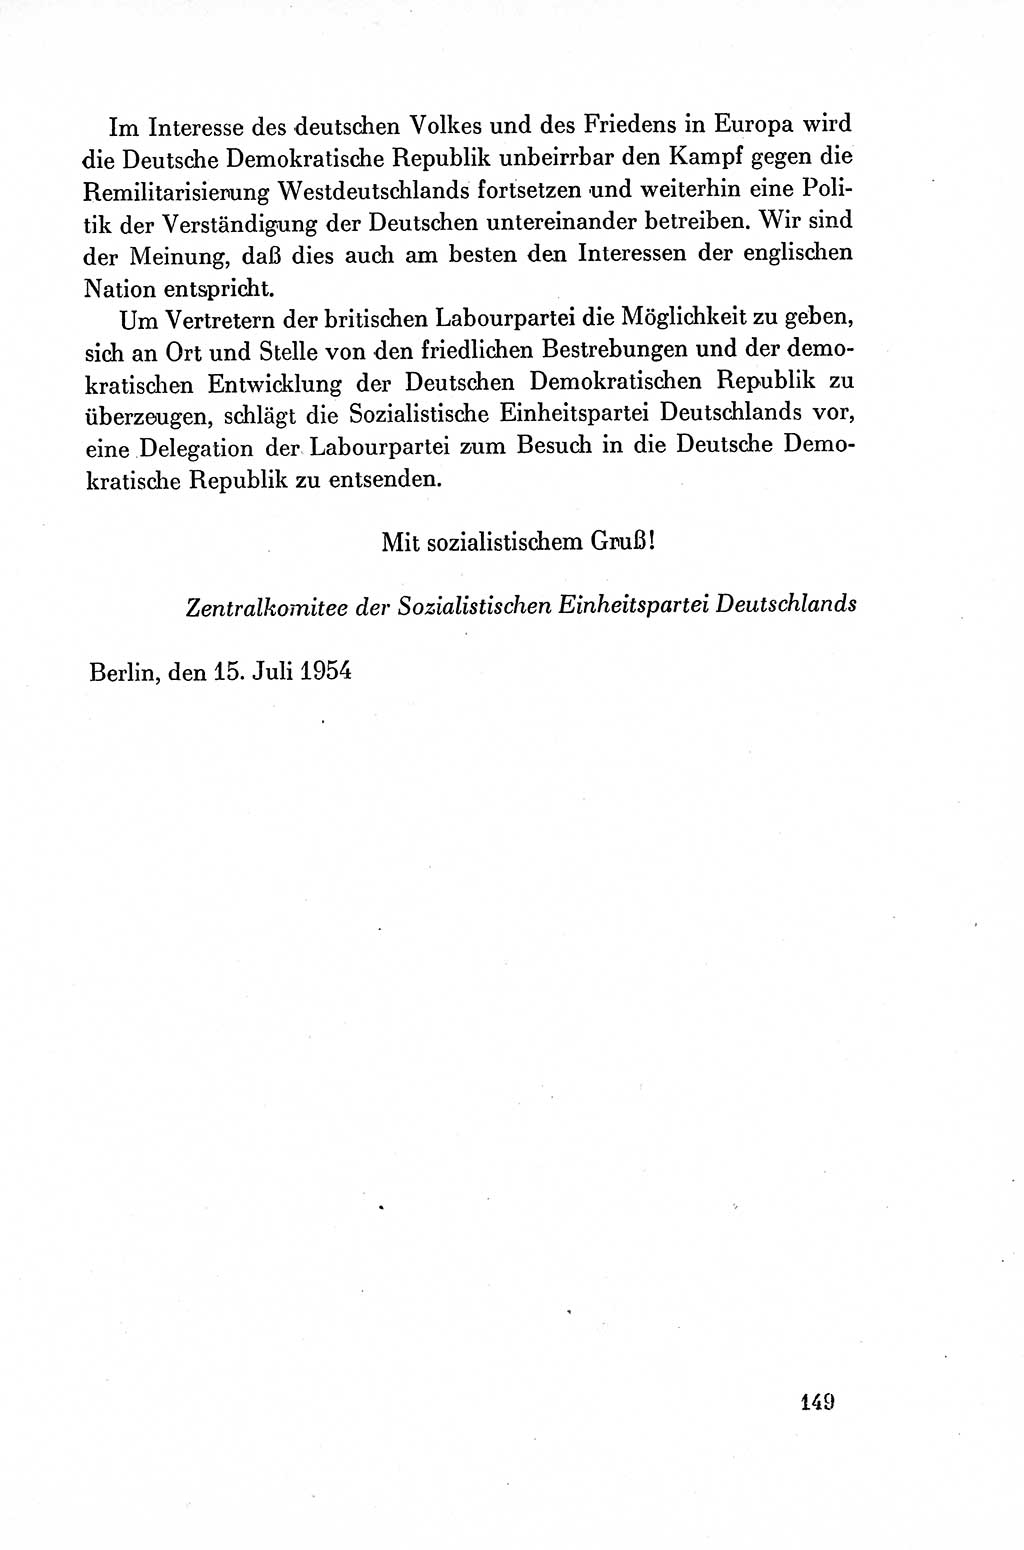 Dokumente der Sozialistischen Einheitspartei Deutschlands (SED) [Deutsche Demokratische Republik (DDR)] 1954-1955, Seite 149 (Dok. SED DDR 1954-1955, S. 149)